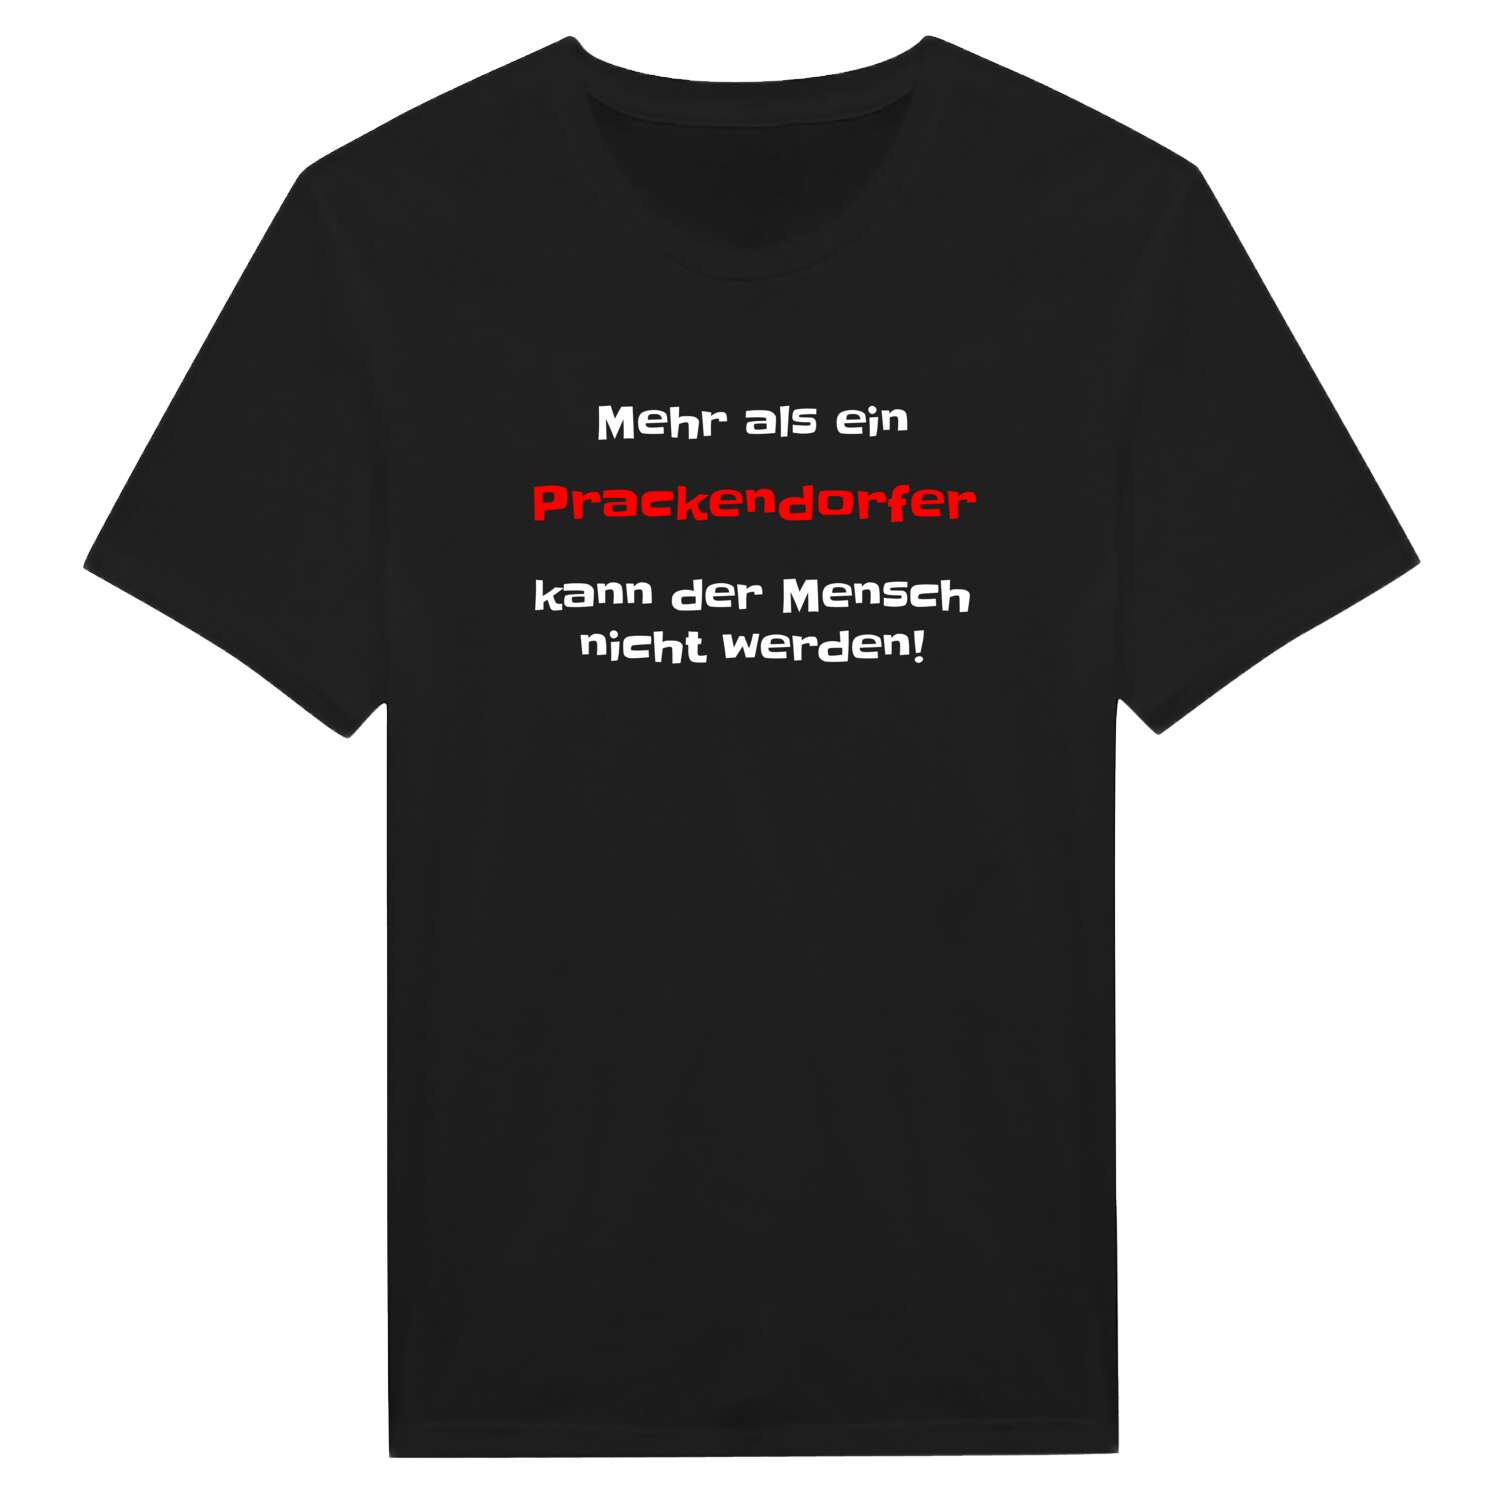 Prackendorf T-Shirt »Mehr als ein«